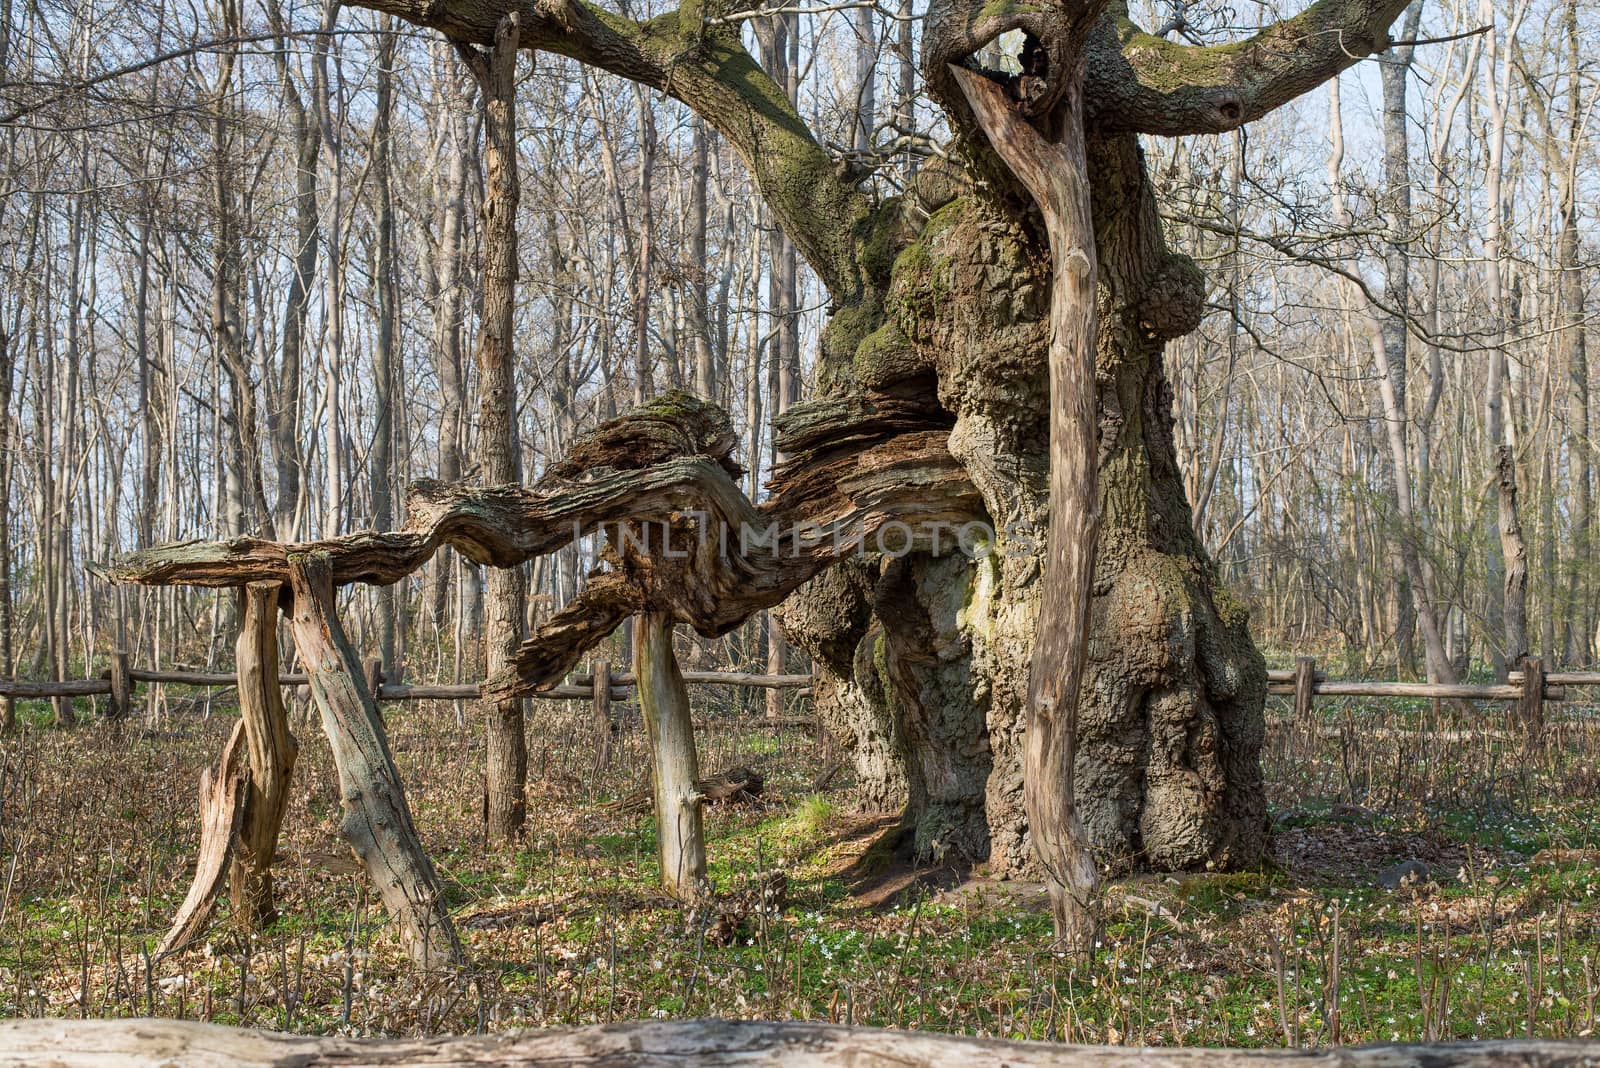 The kings oak tree, Kongeegen, a more then 1500 years old oak tree in J��gerspris Nordskov, Denmark in spring 